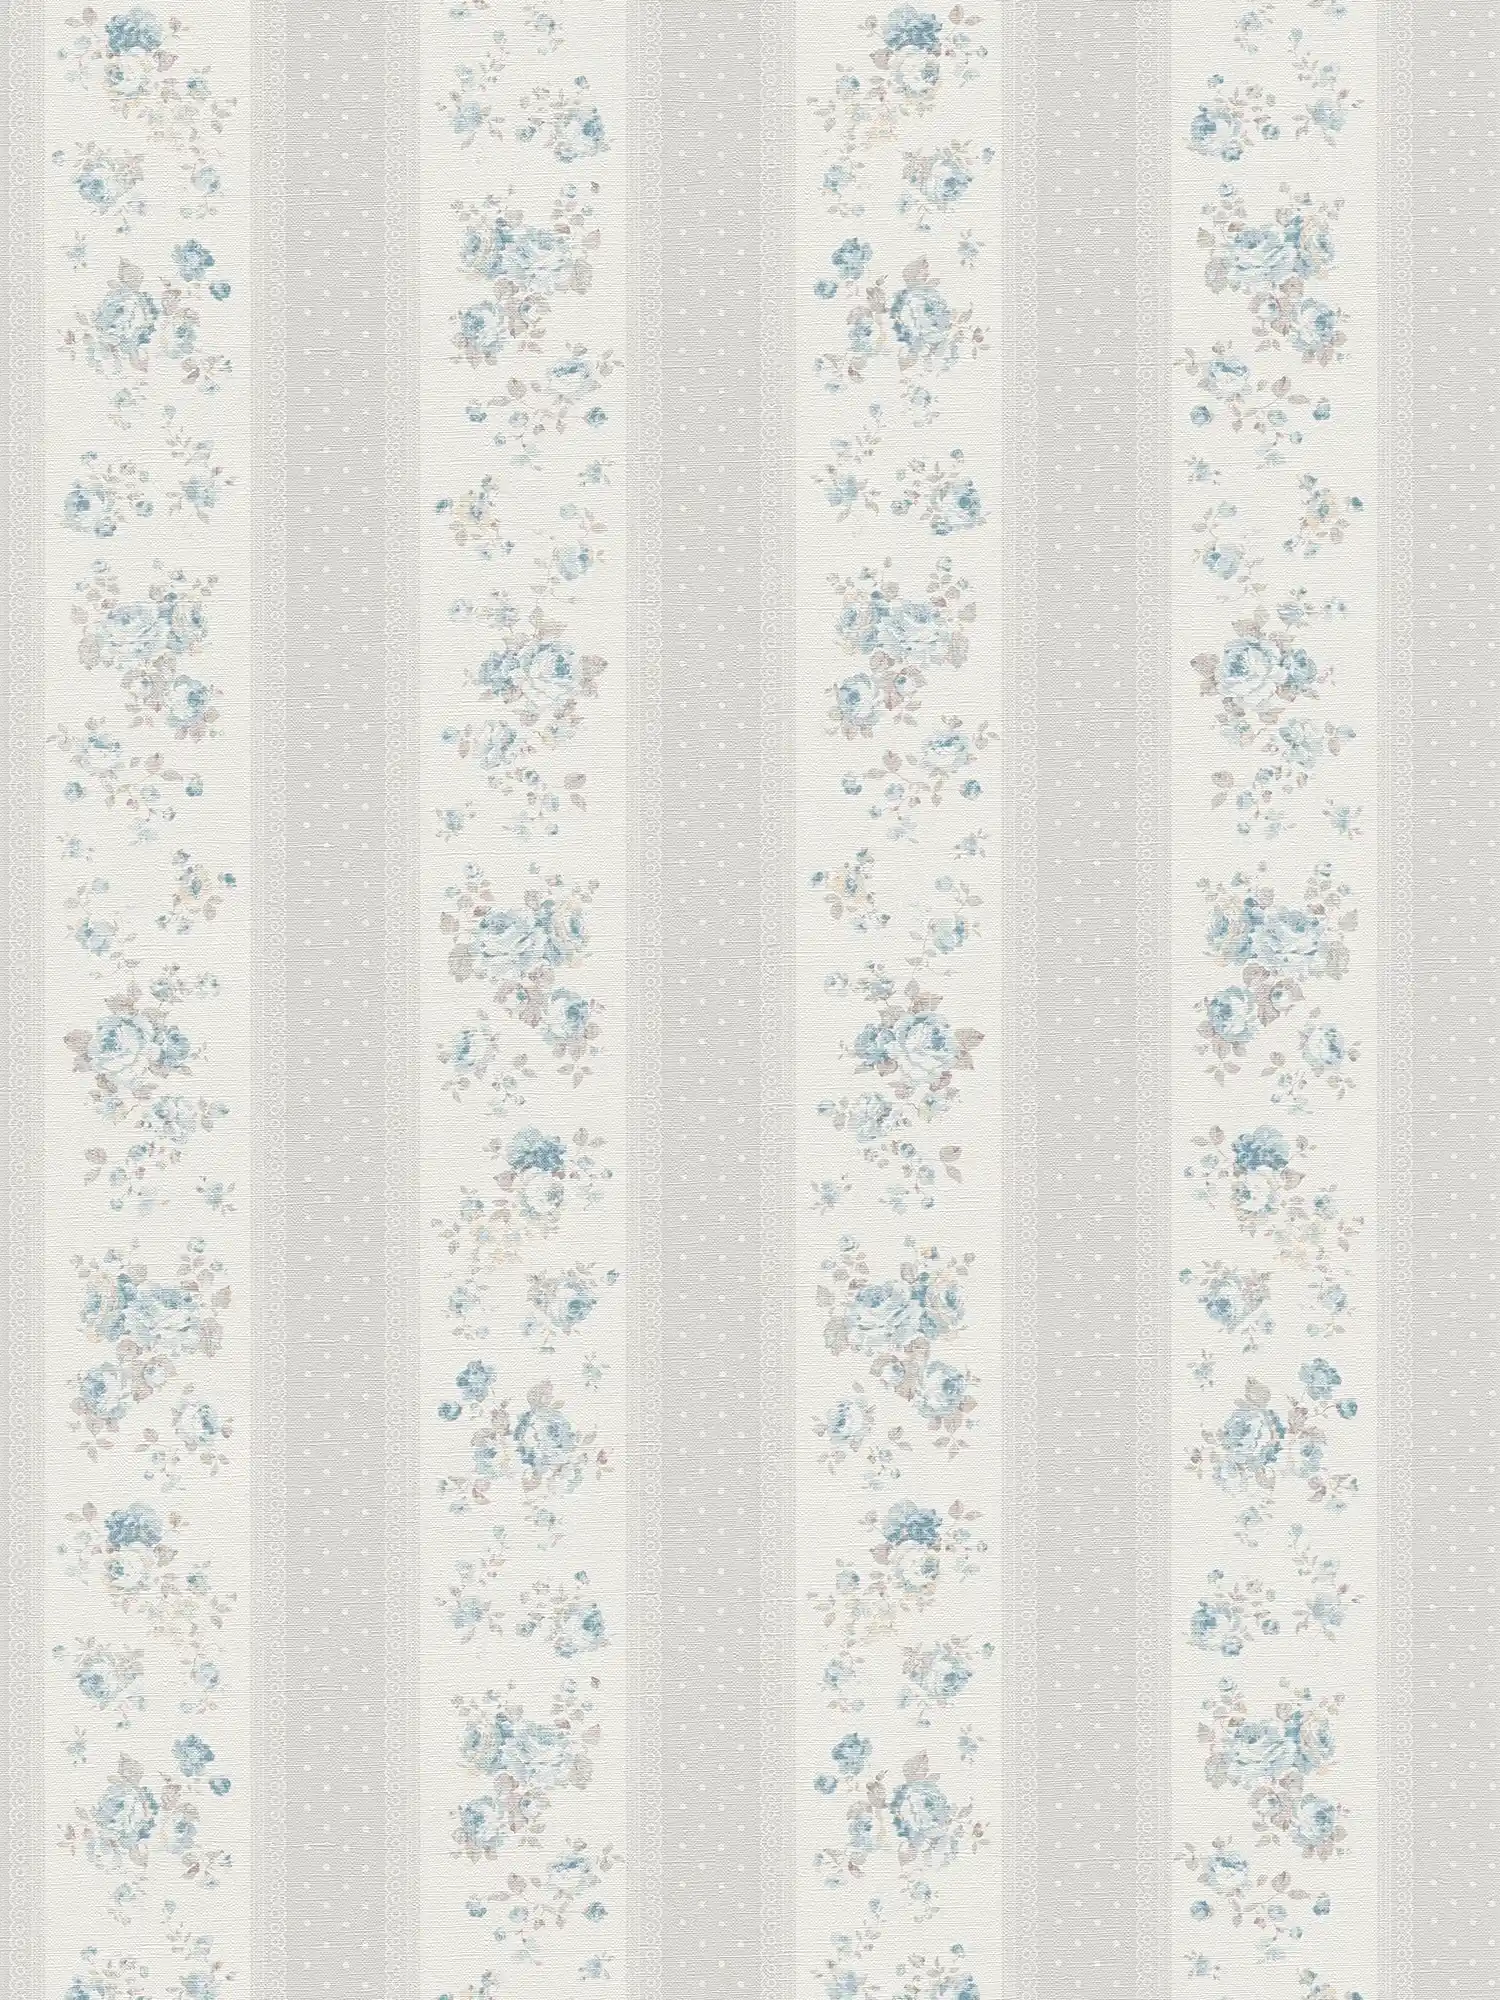         Vliestapete mit gepunkteten und floralen Streifen – Grau, Weiß, Blau
    